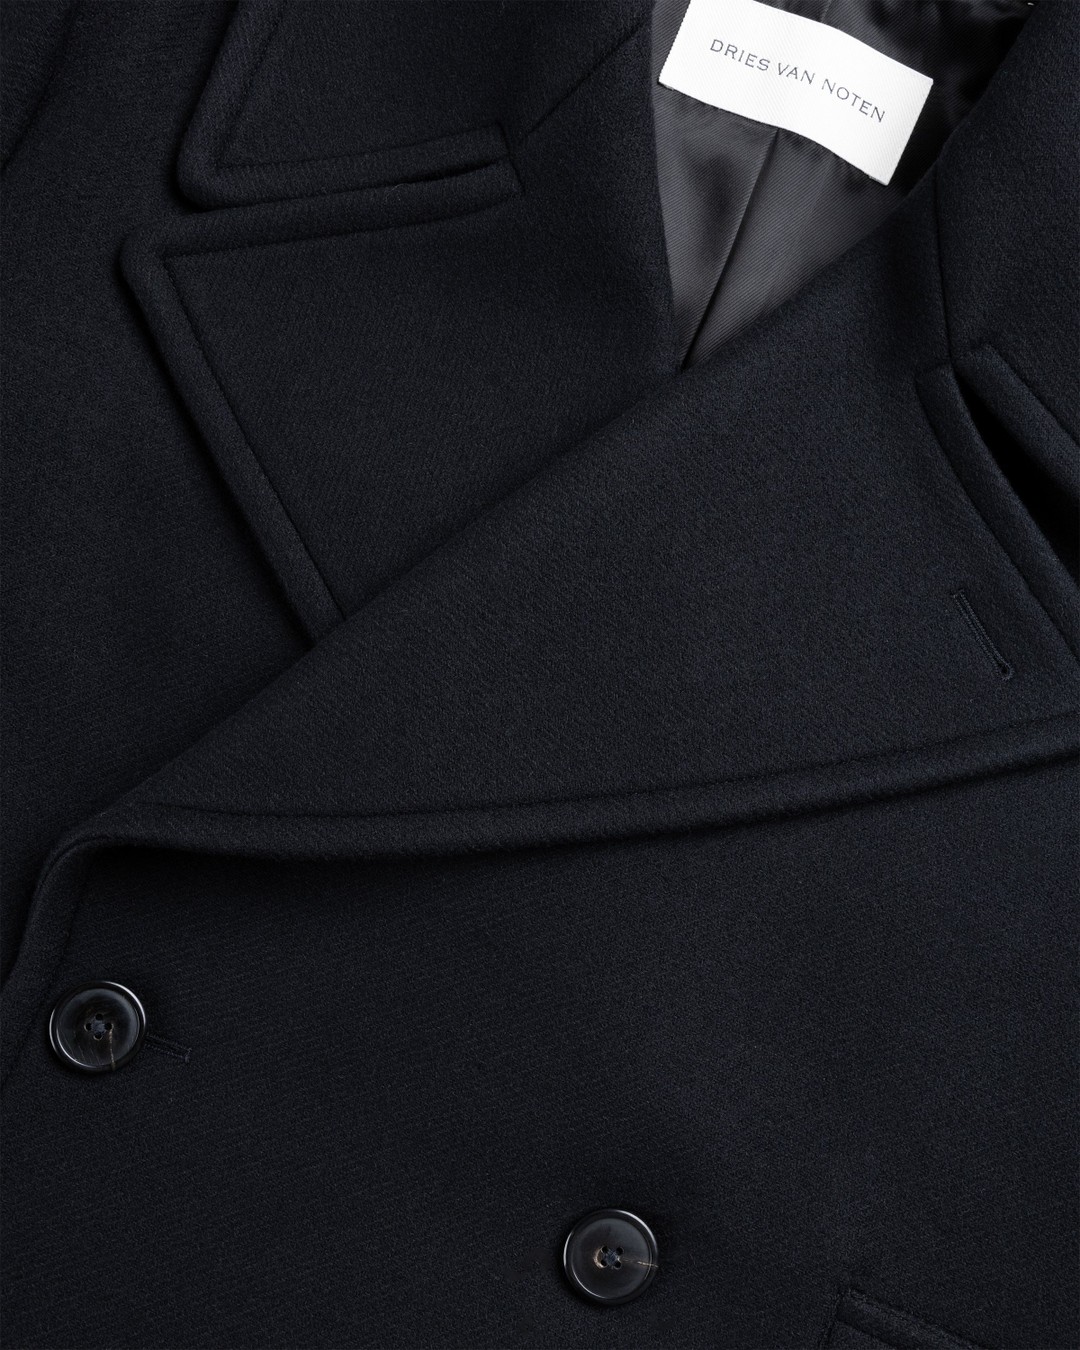 Dries van Noten – Raven Coat Black - Outerwear - Black - Image 5